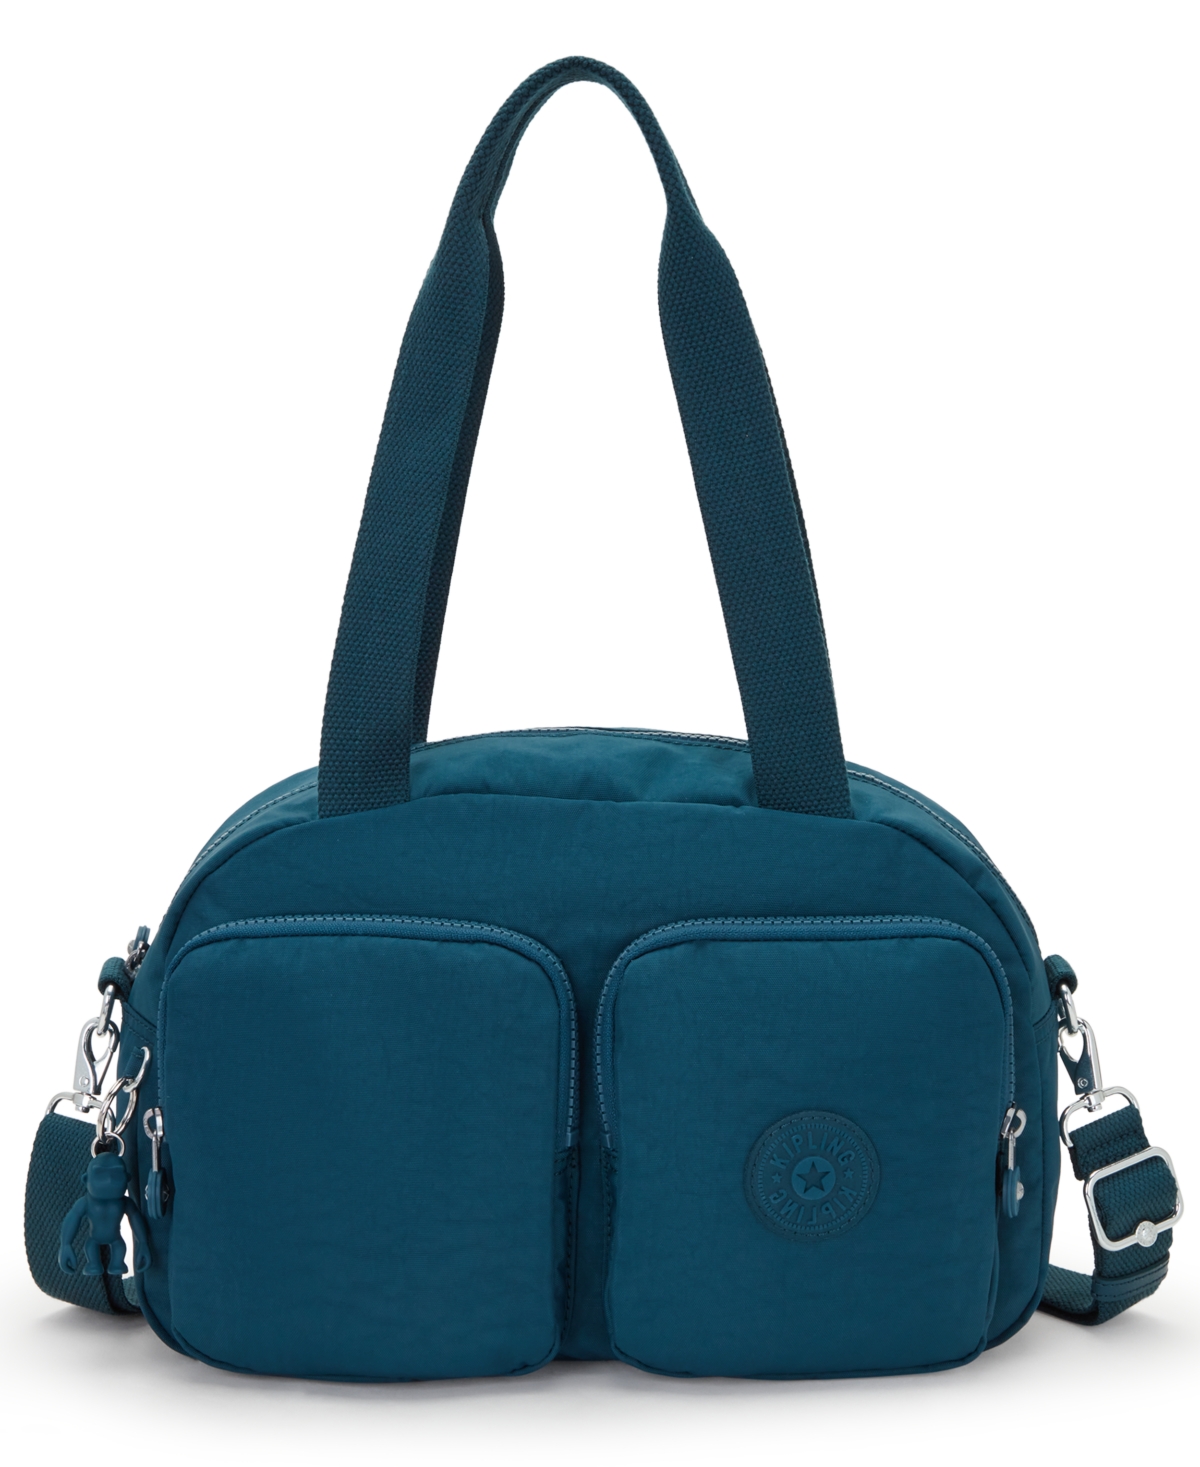 Cool Defea Convertible Handbag - Cosmic Emerald